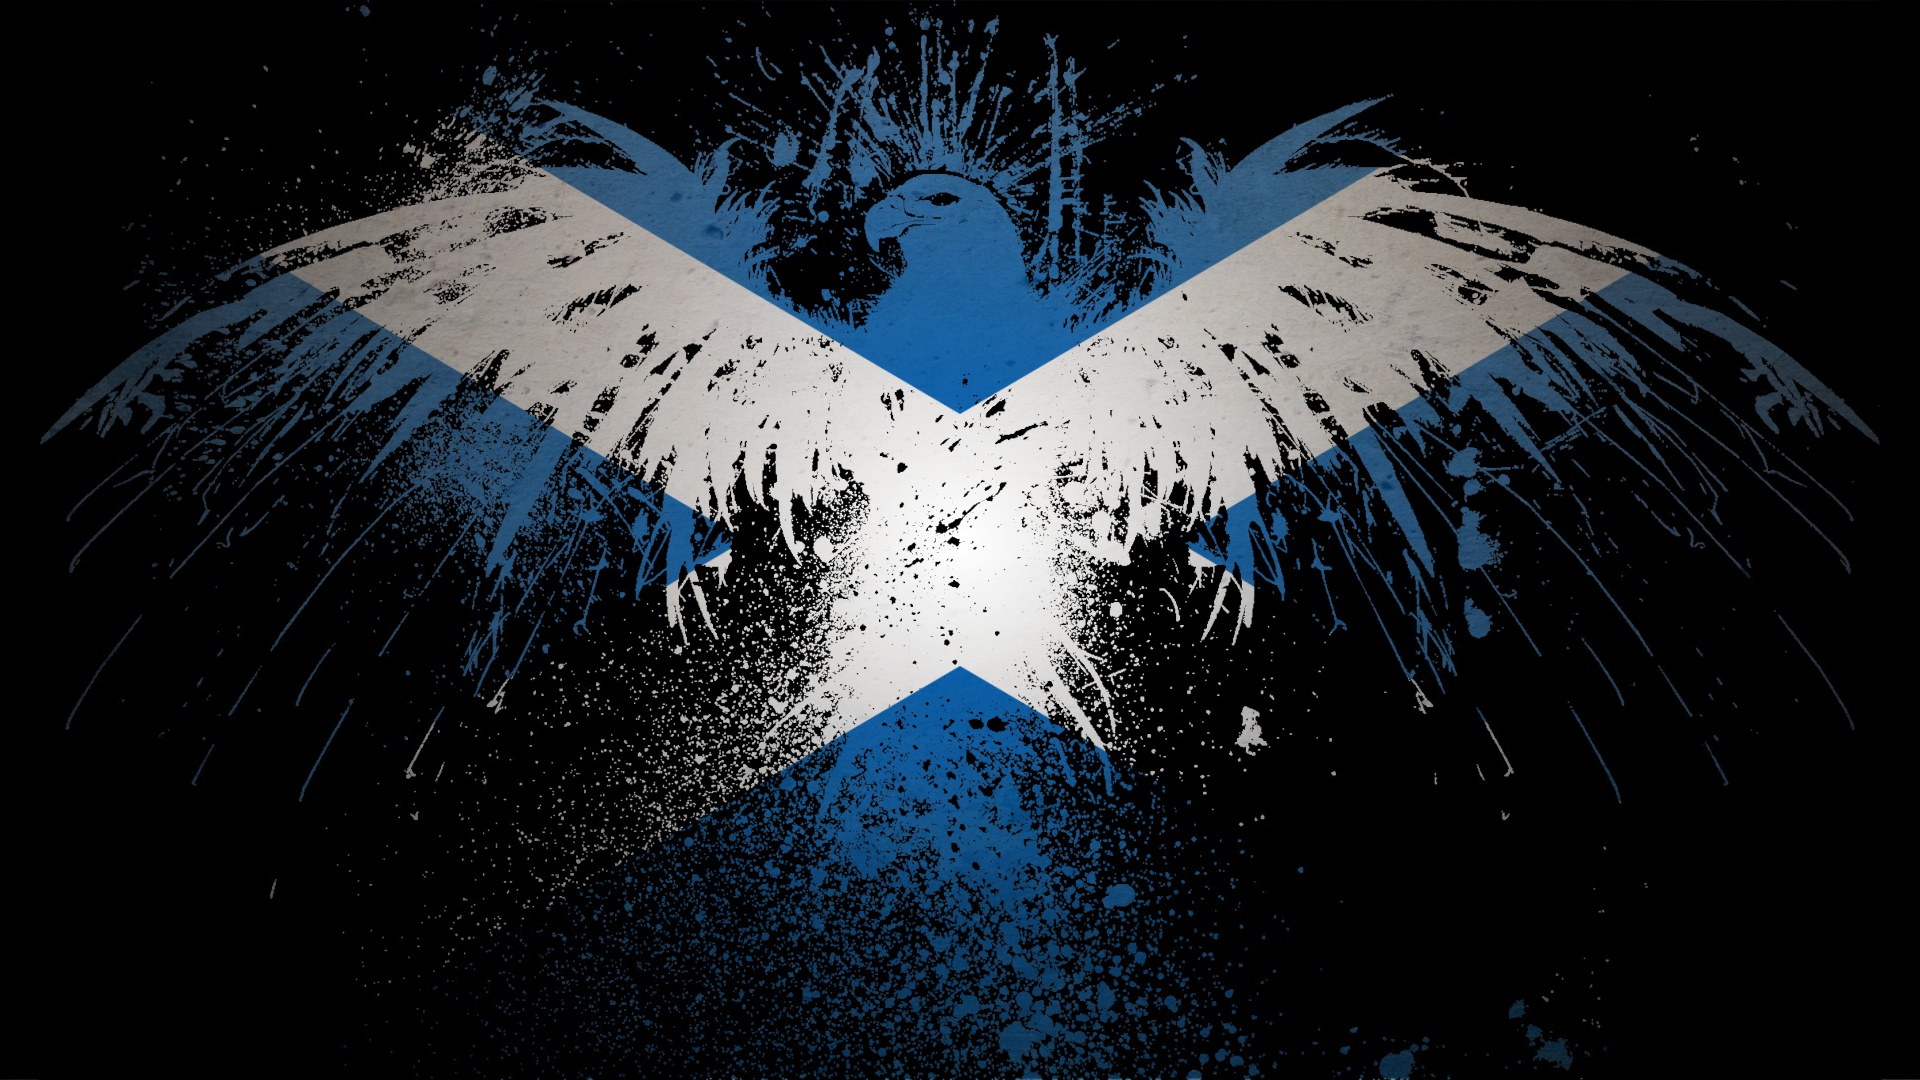 eagles, flags, Scotland - desktop wallpaper